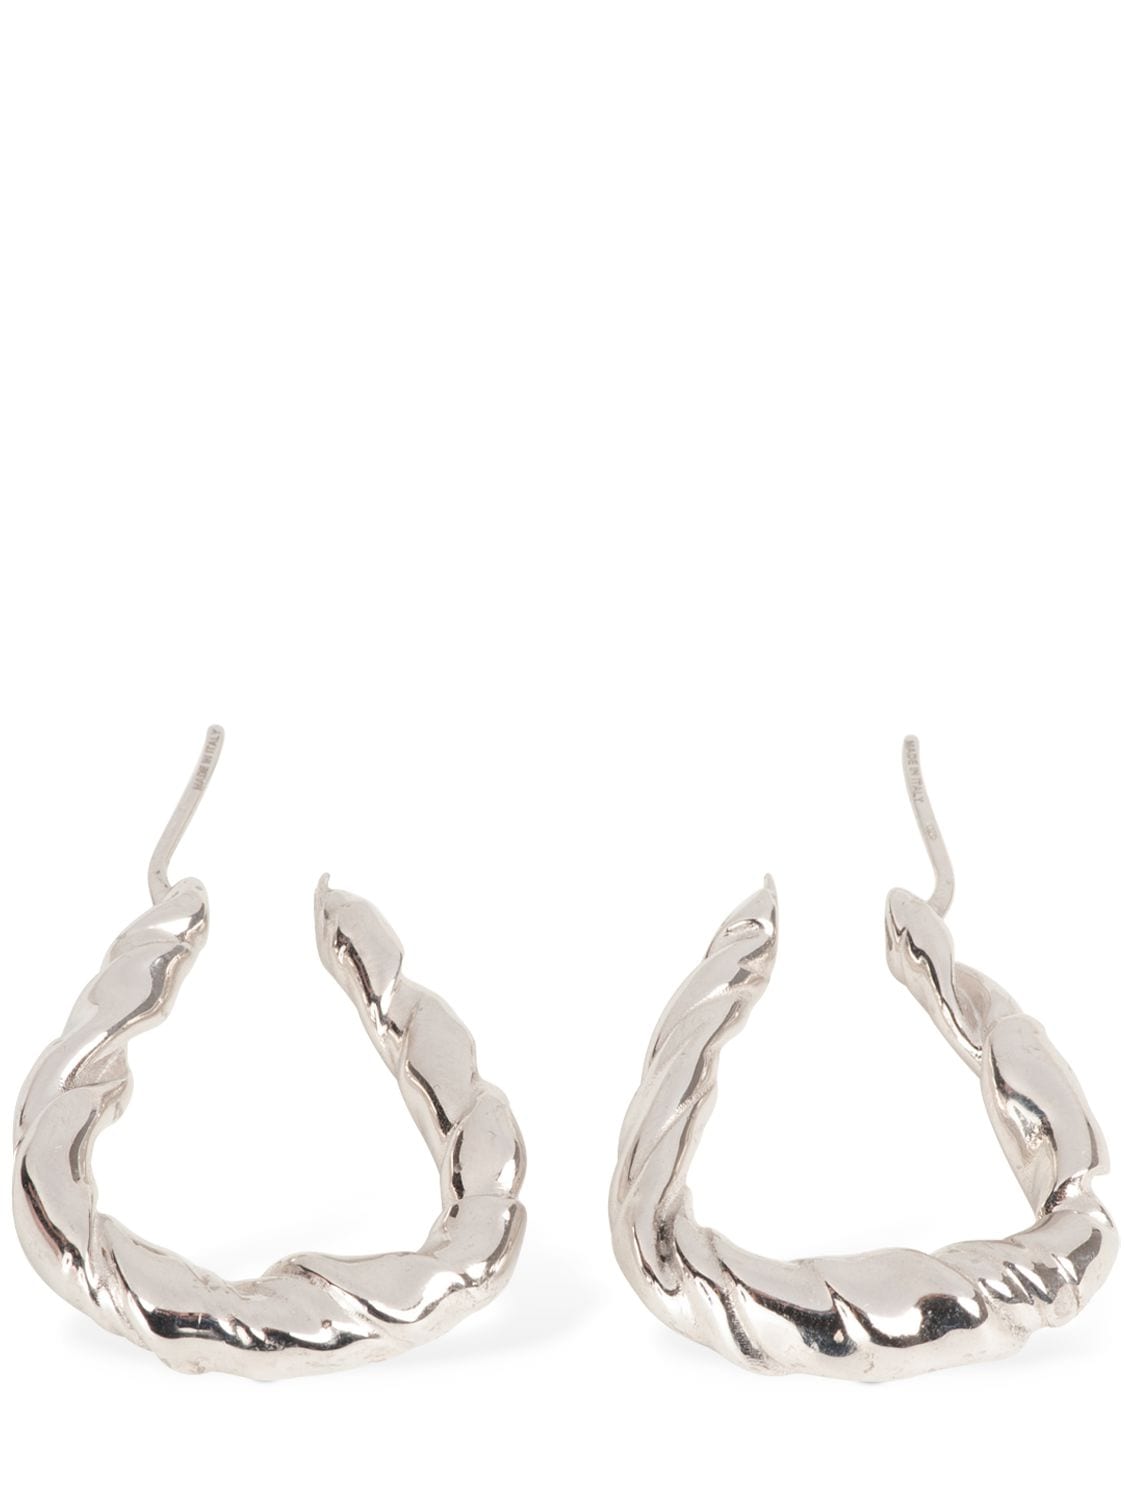 LOEWE 2021-22FW Nappa twist earrings in sterling silver (CIL: 0010622306)